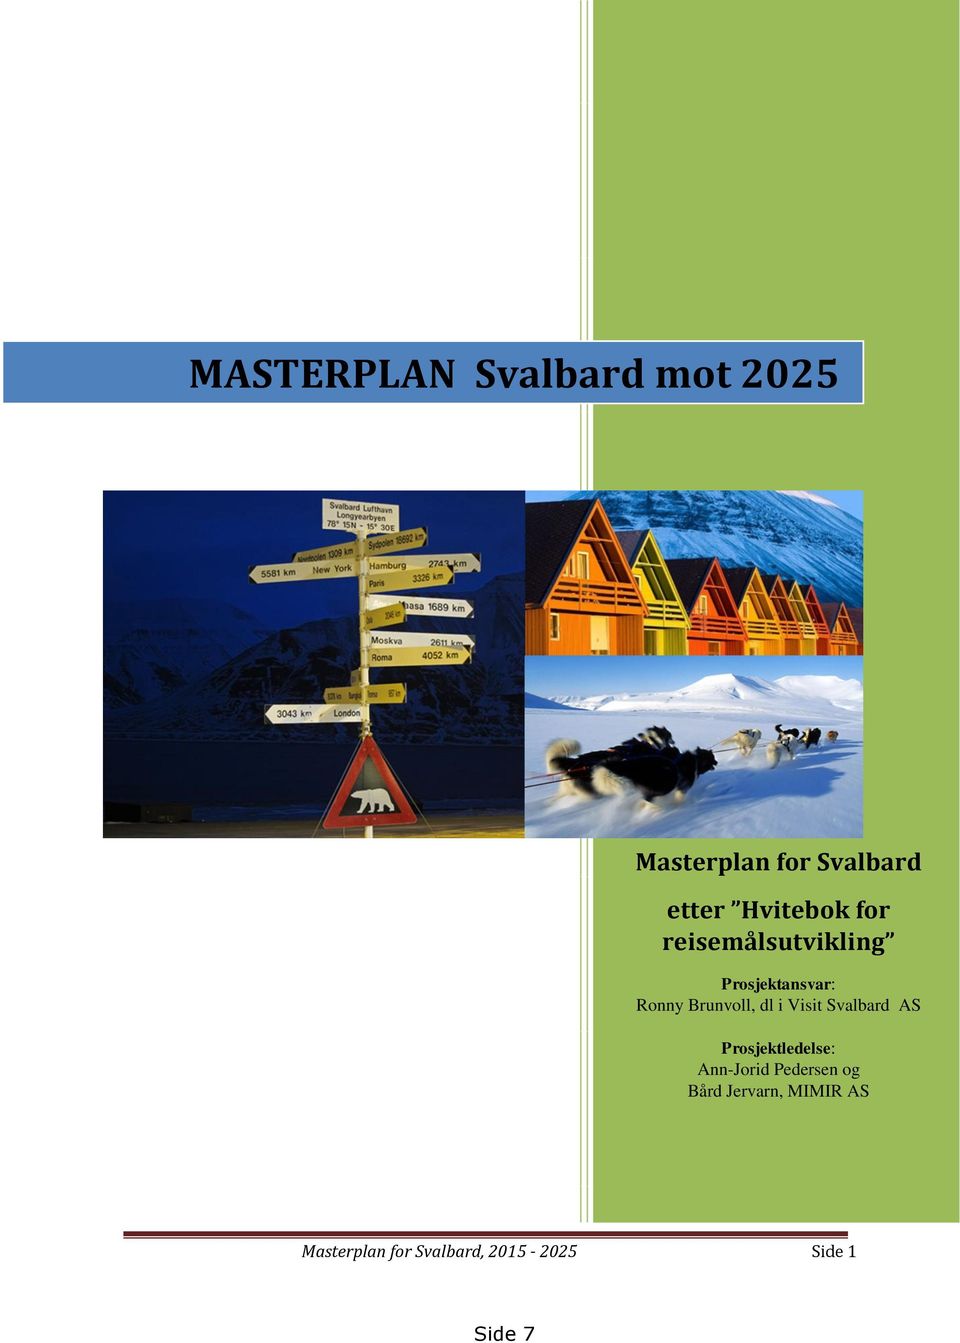 dl i Visit Svalbard AS Prosjektledelse: Ann-Jorid Pedersen og